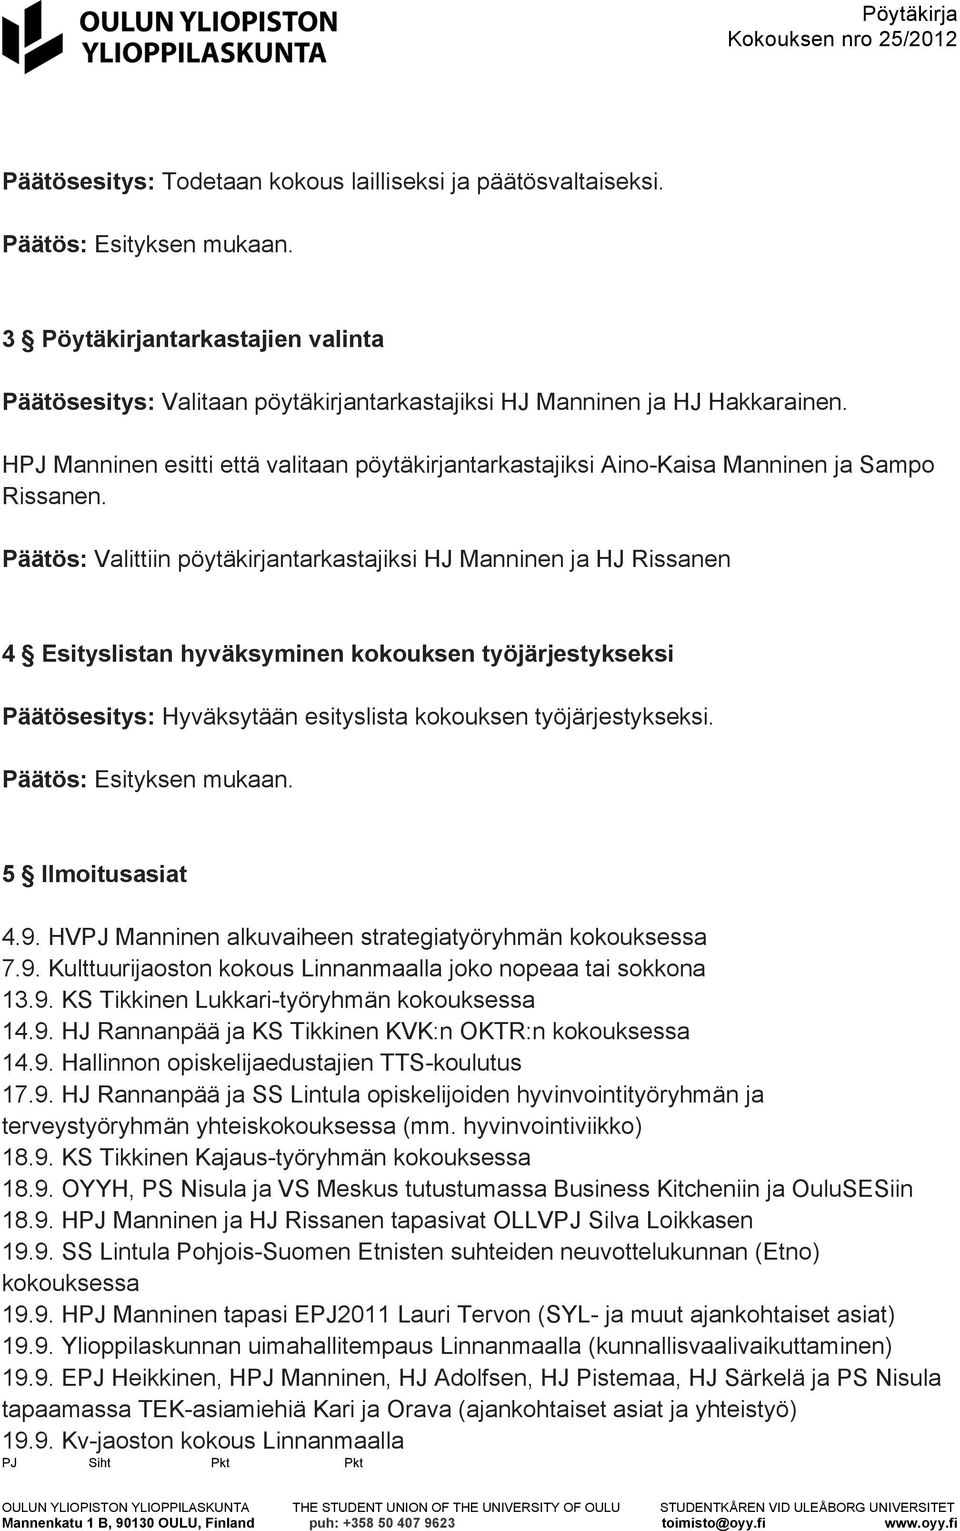 Päätös: Valittiin pöytäkirjantarkastajiksi HJ Manninen ja HJ Rissanen 4 Esityslistan hyväksyminen kokouksen työjärjestykseksi Päätösesitys: Hyväksytään esityslista kokouksen työjärjestykseksi.